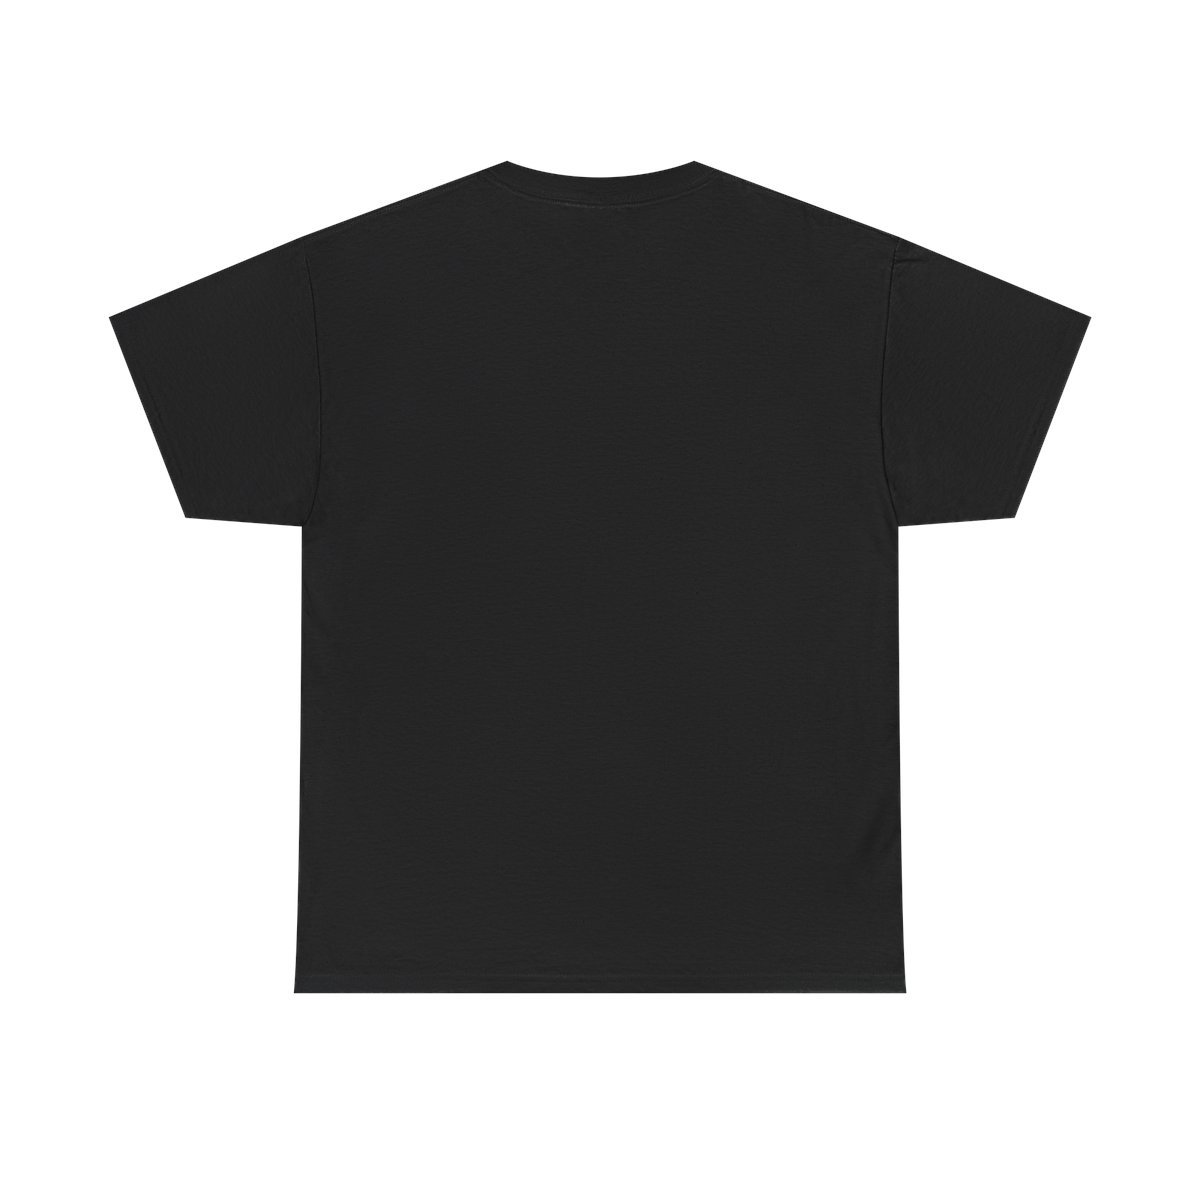 Elgibbor – Repent Or Perish Short Sleeve Tshirt